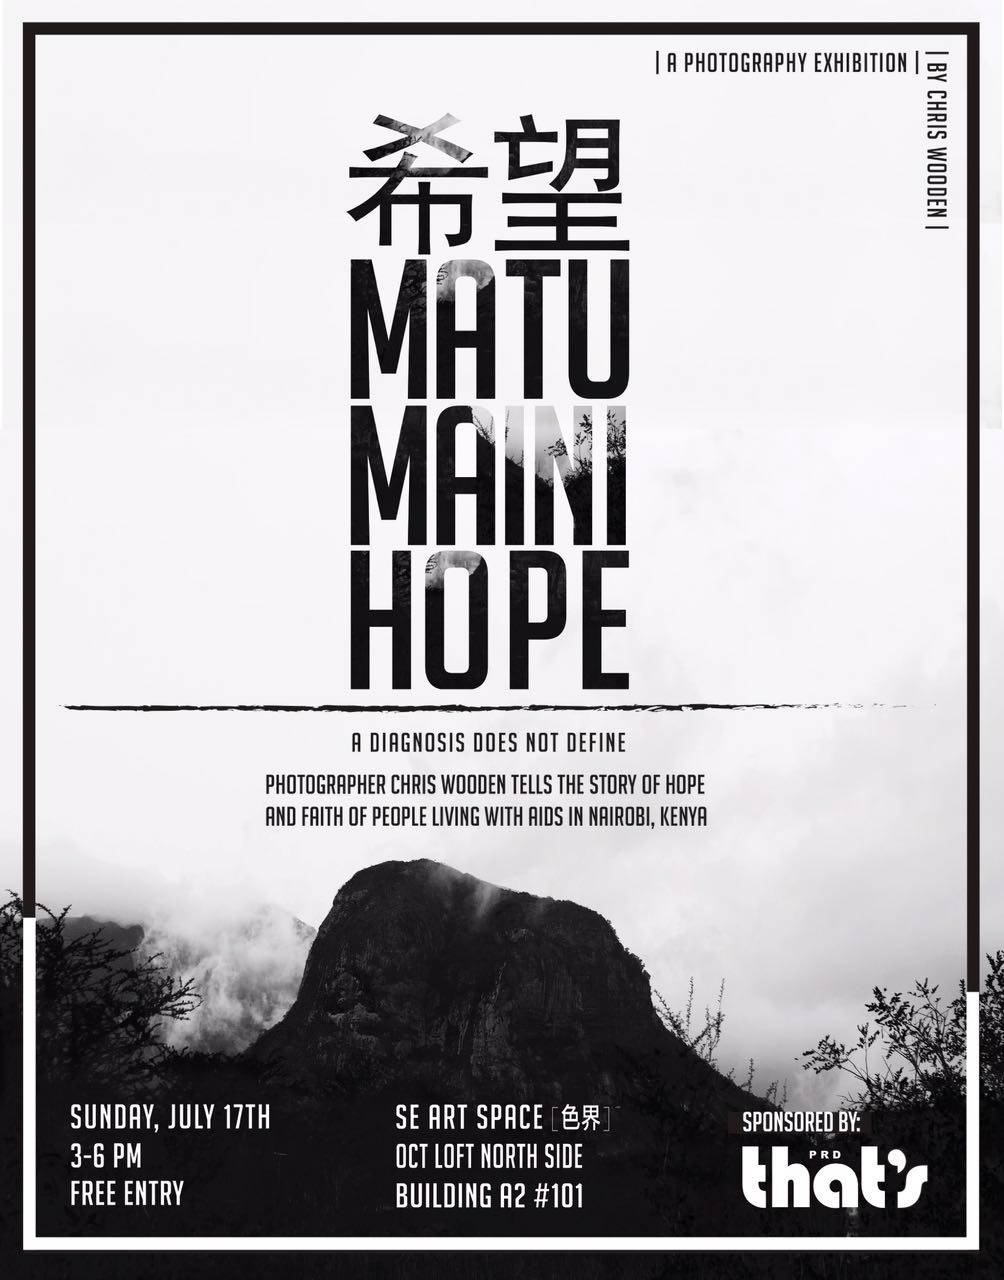 matumaini-hope-exhibition.jpg